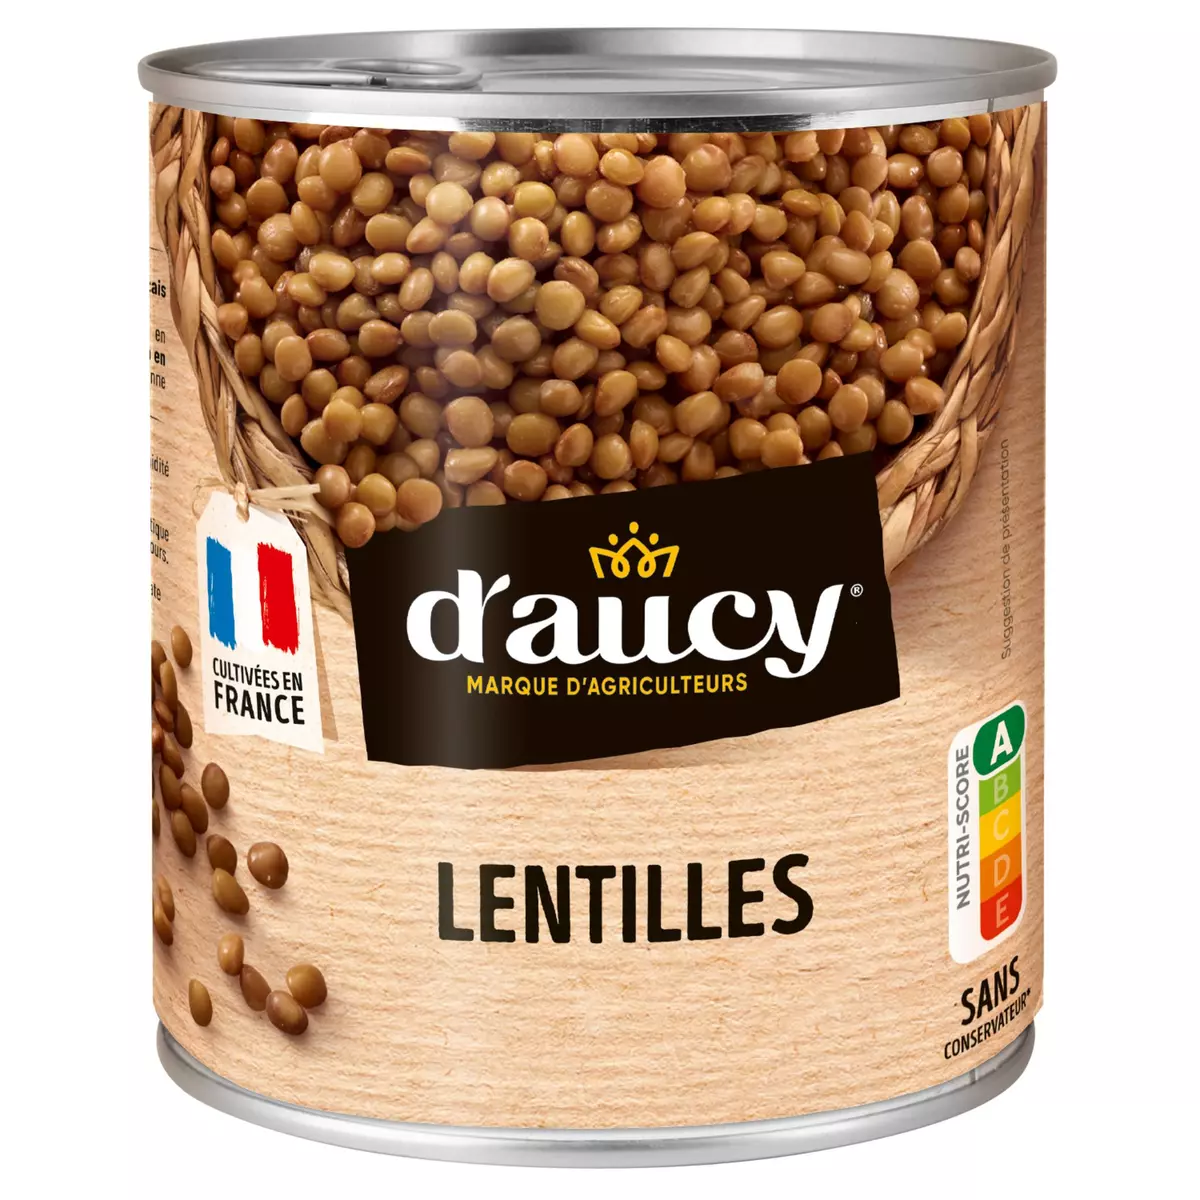 D'AUCY Lentilles préparées 100% cultivées en France 530g